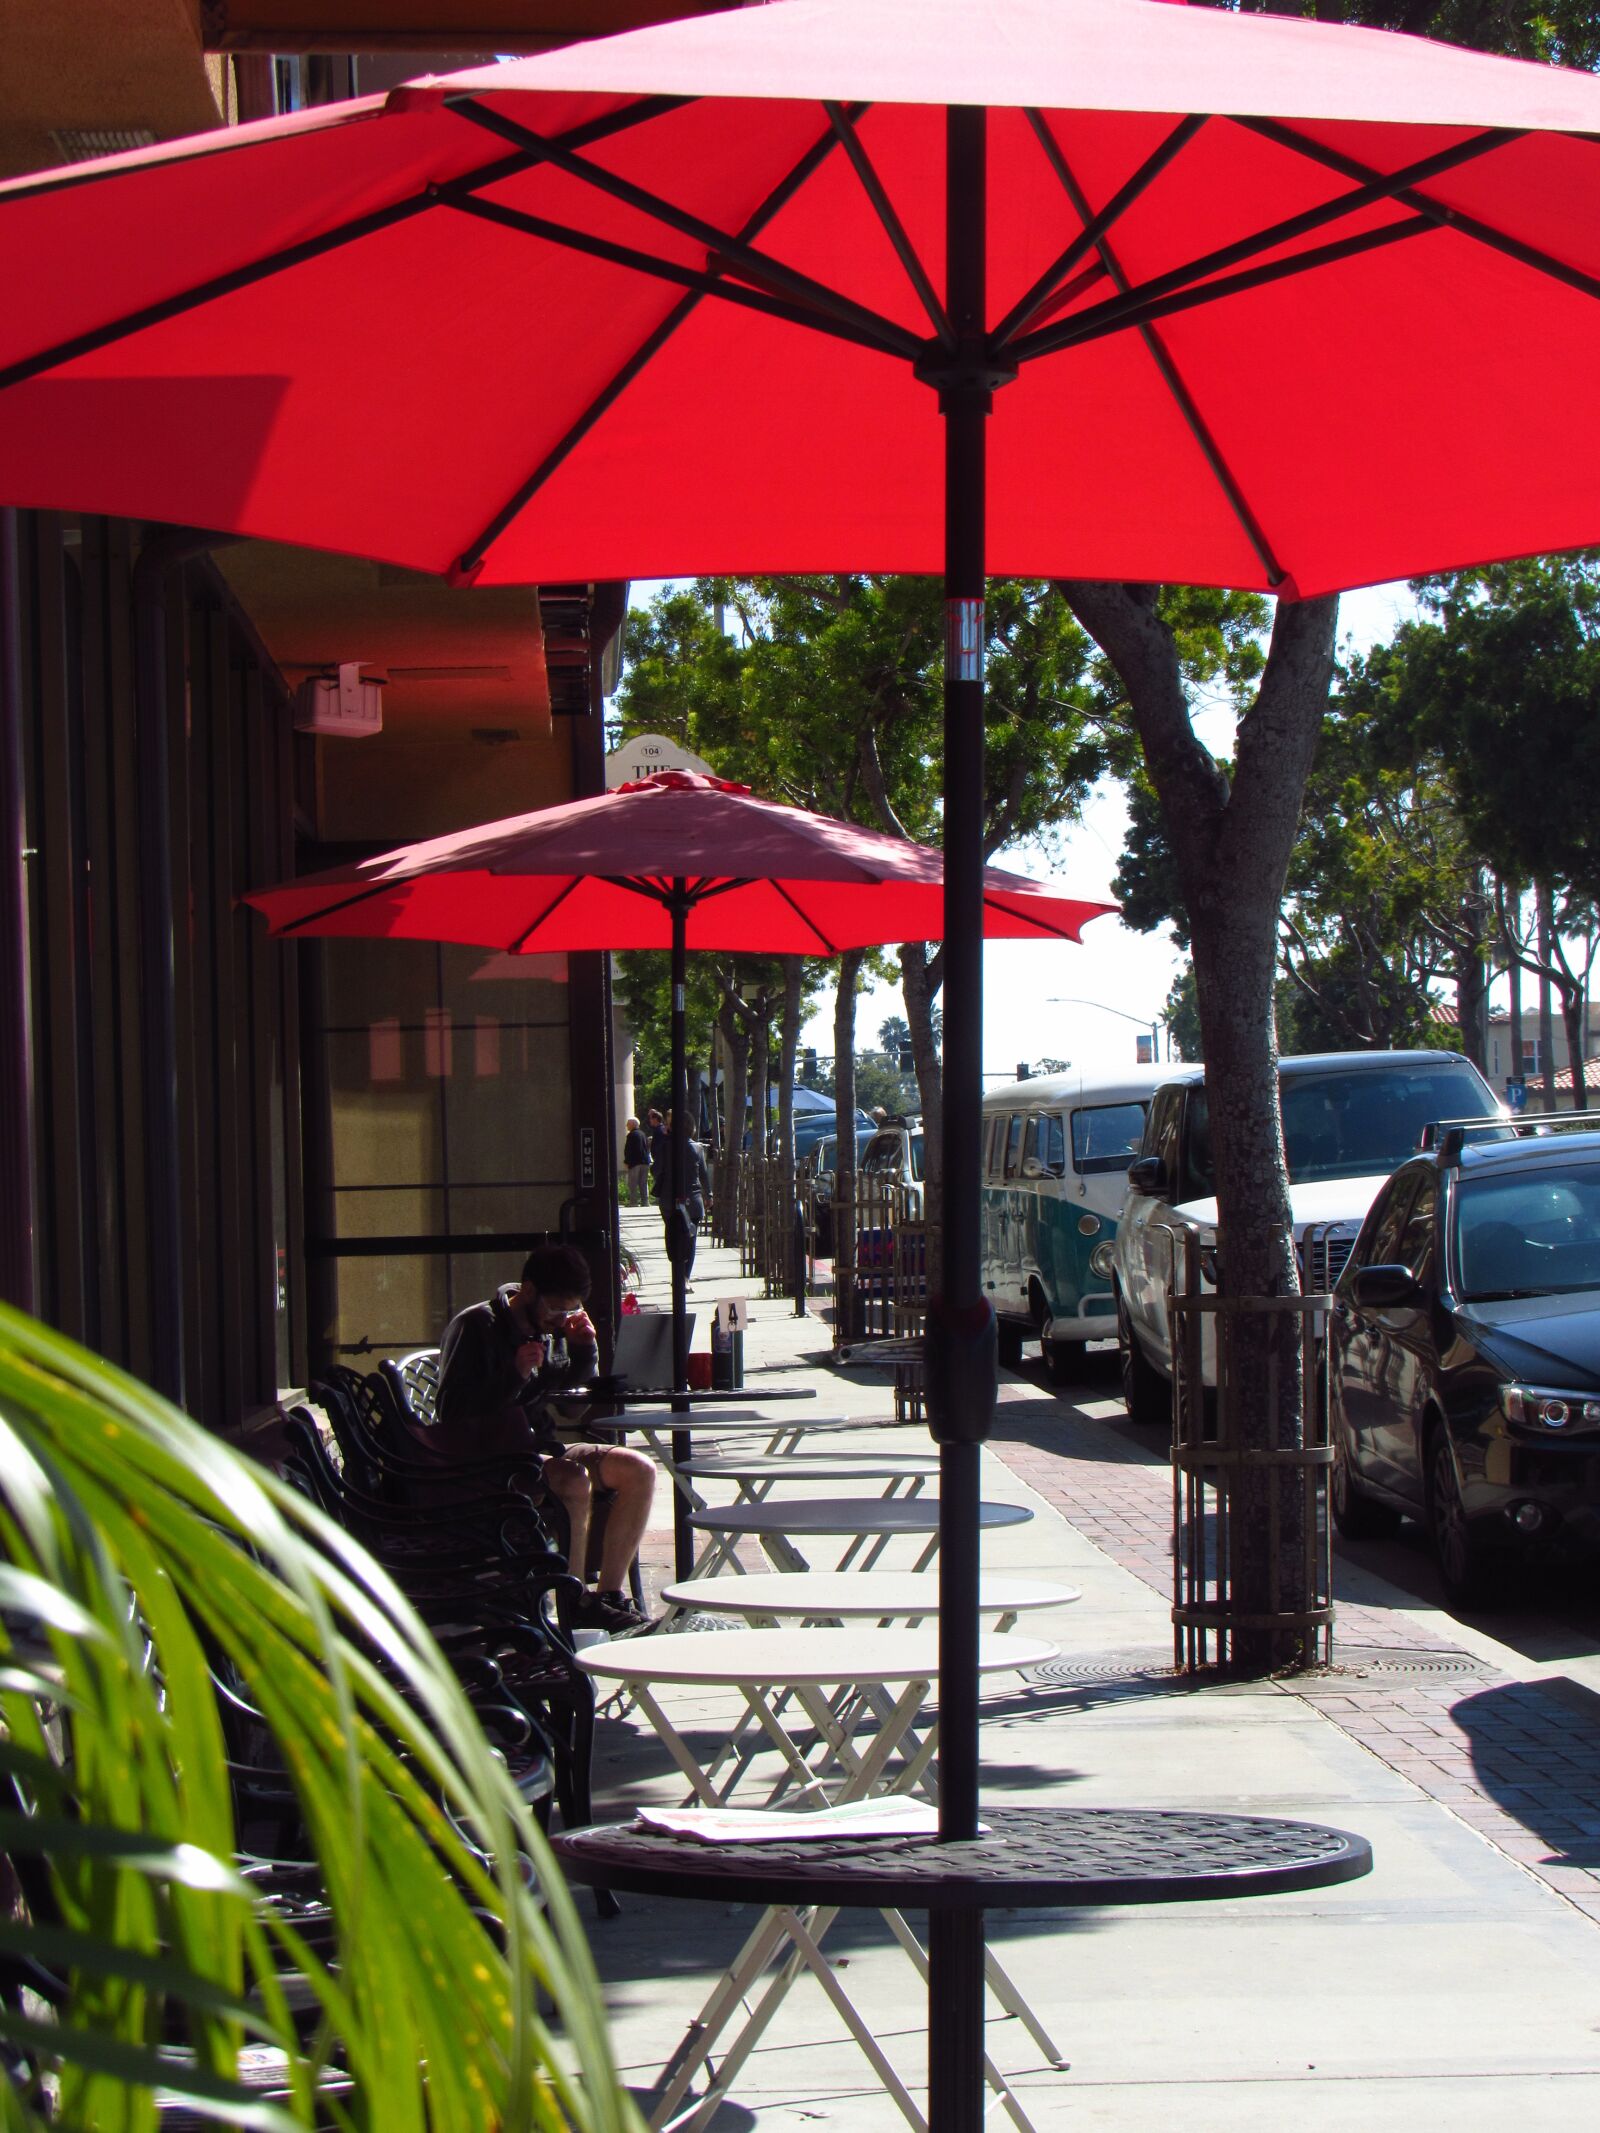 Уличные кафе купить. Зонт для кафе. Зонтик для кафе большой. Зонты для летнего кафе. Уличное кафе с зонтиками.